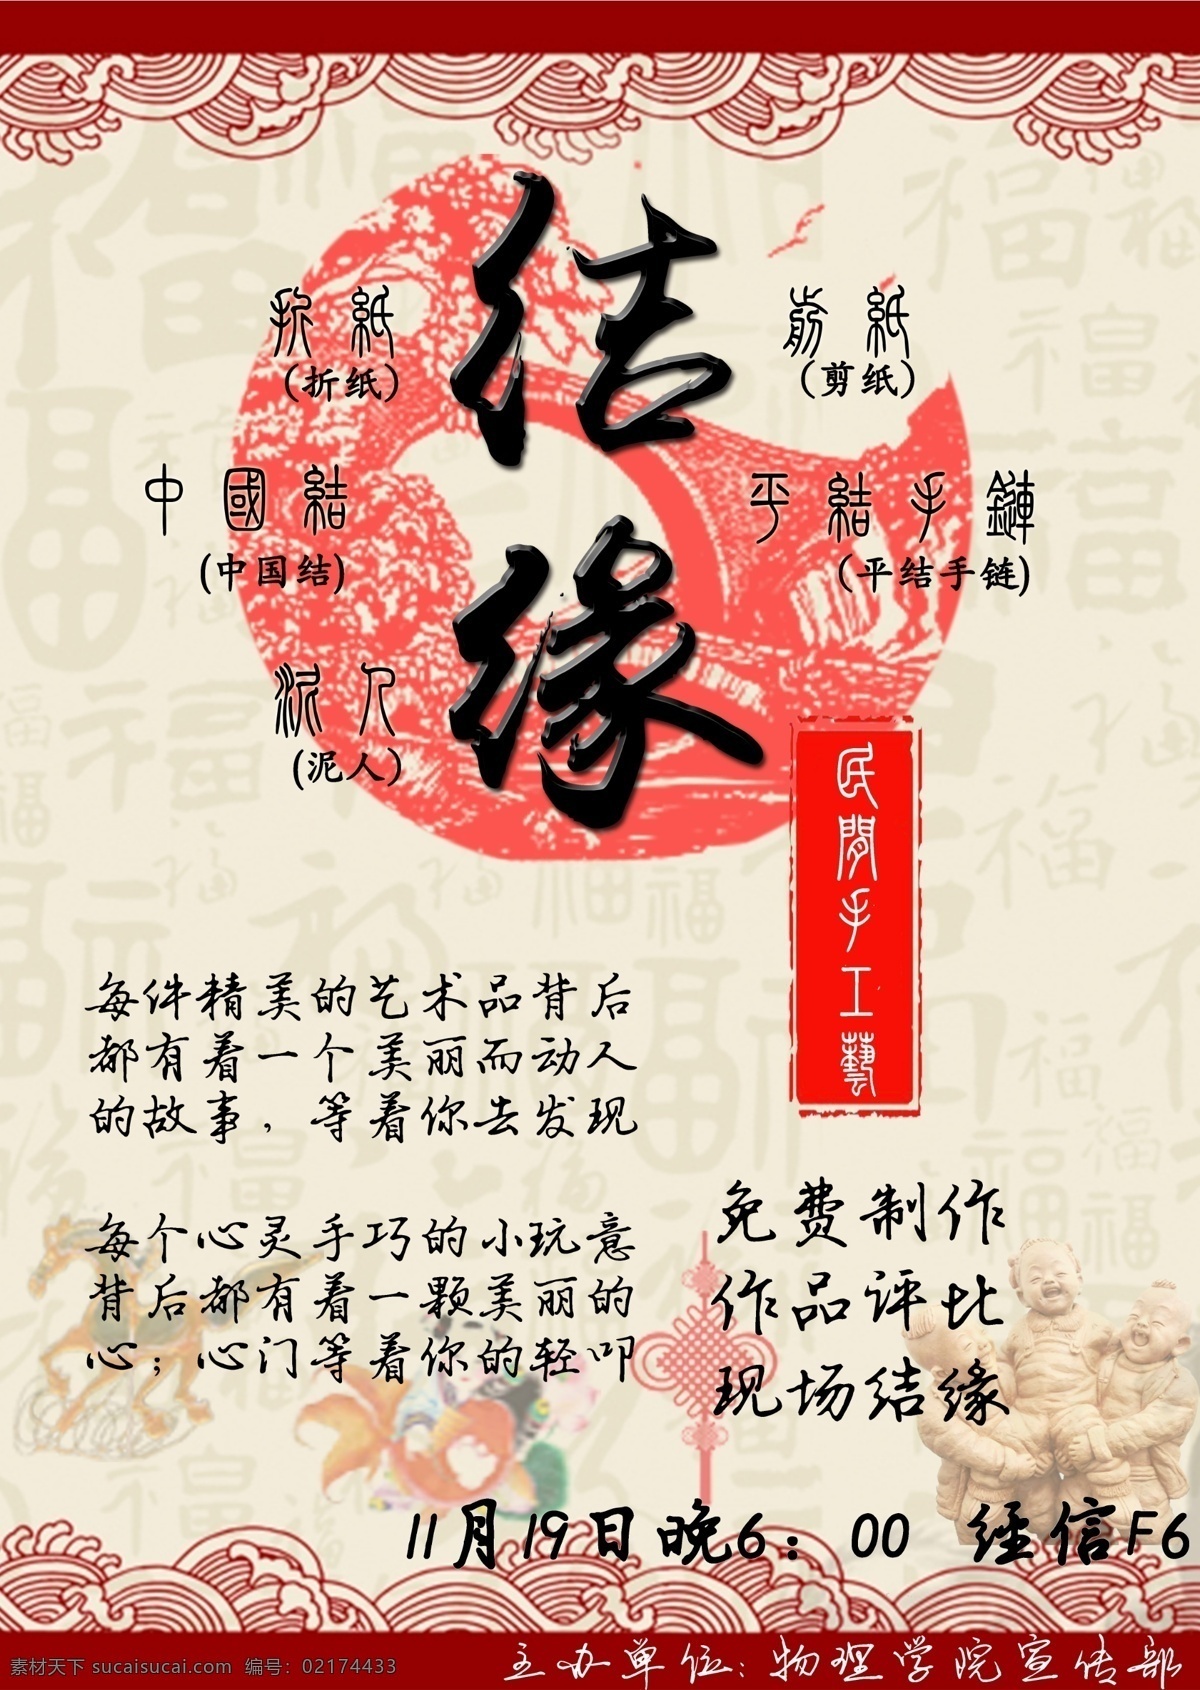 中国结海报 中国结 红色 传统手工艺 民族 结缘 公益活动